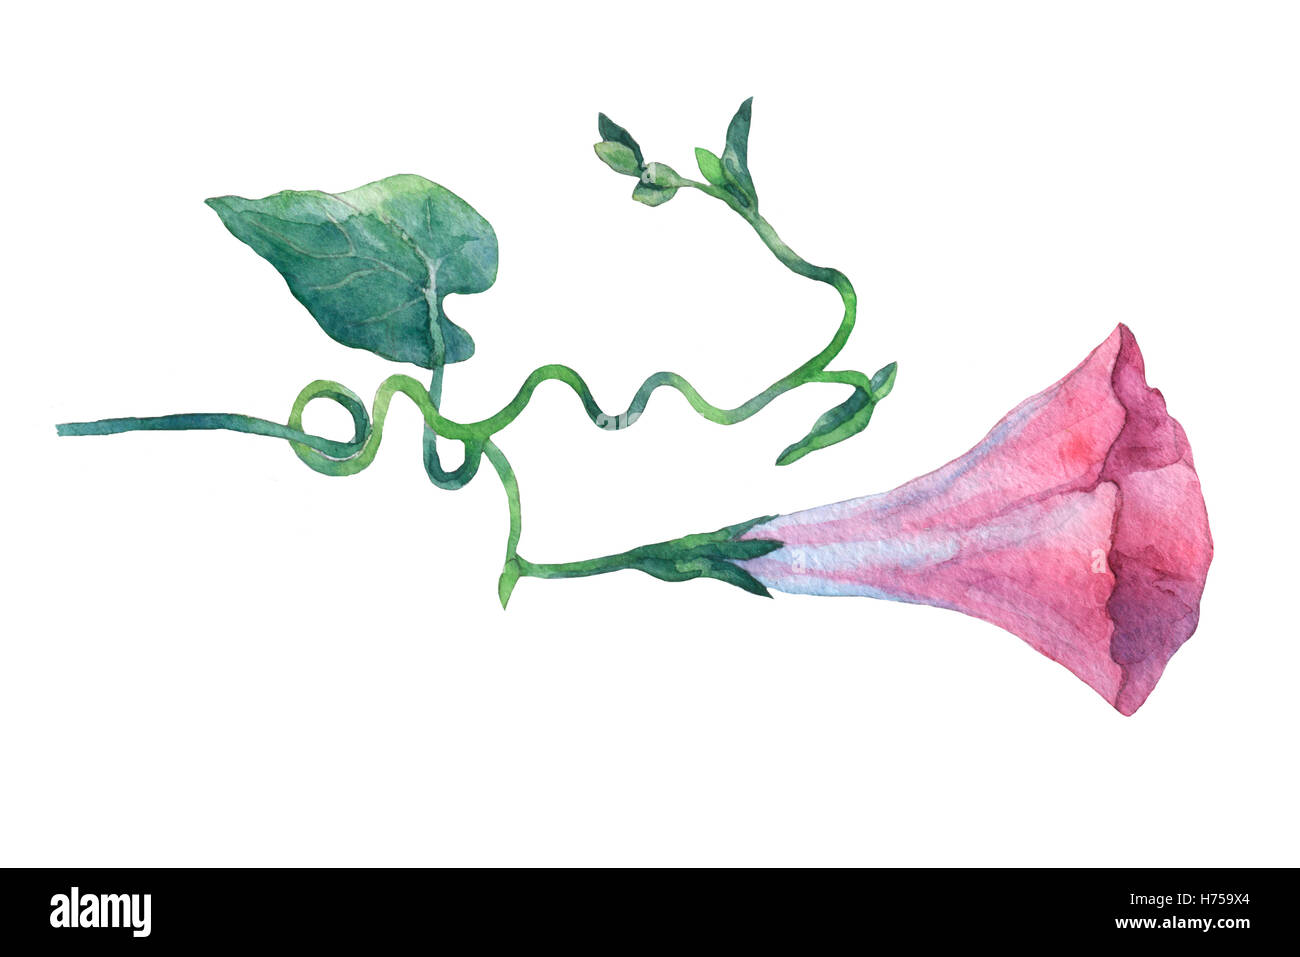 Gloire du matin Rose, le liseron des champs (Convolvulus arvensis) fleurs. Hand drawn aquarelle illustration botanique. Banque D'Images